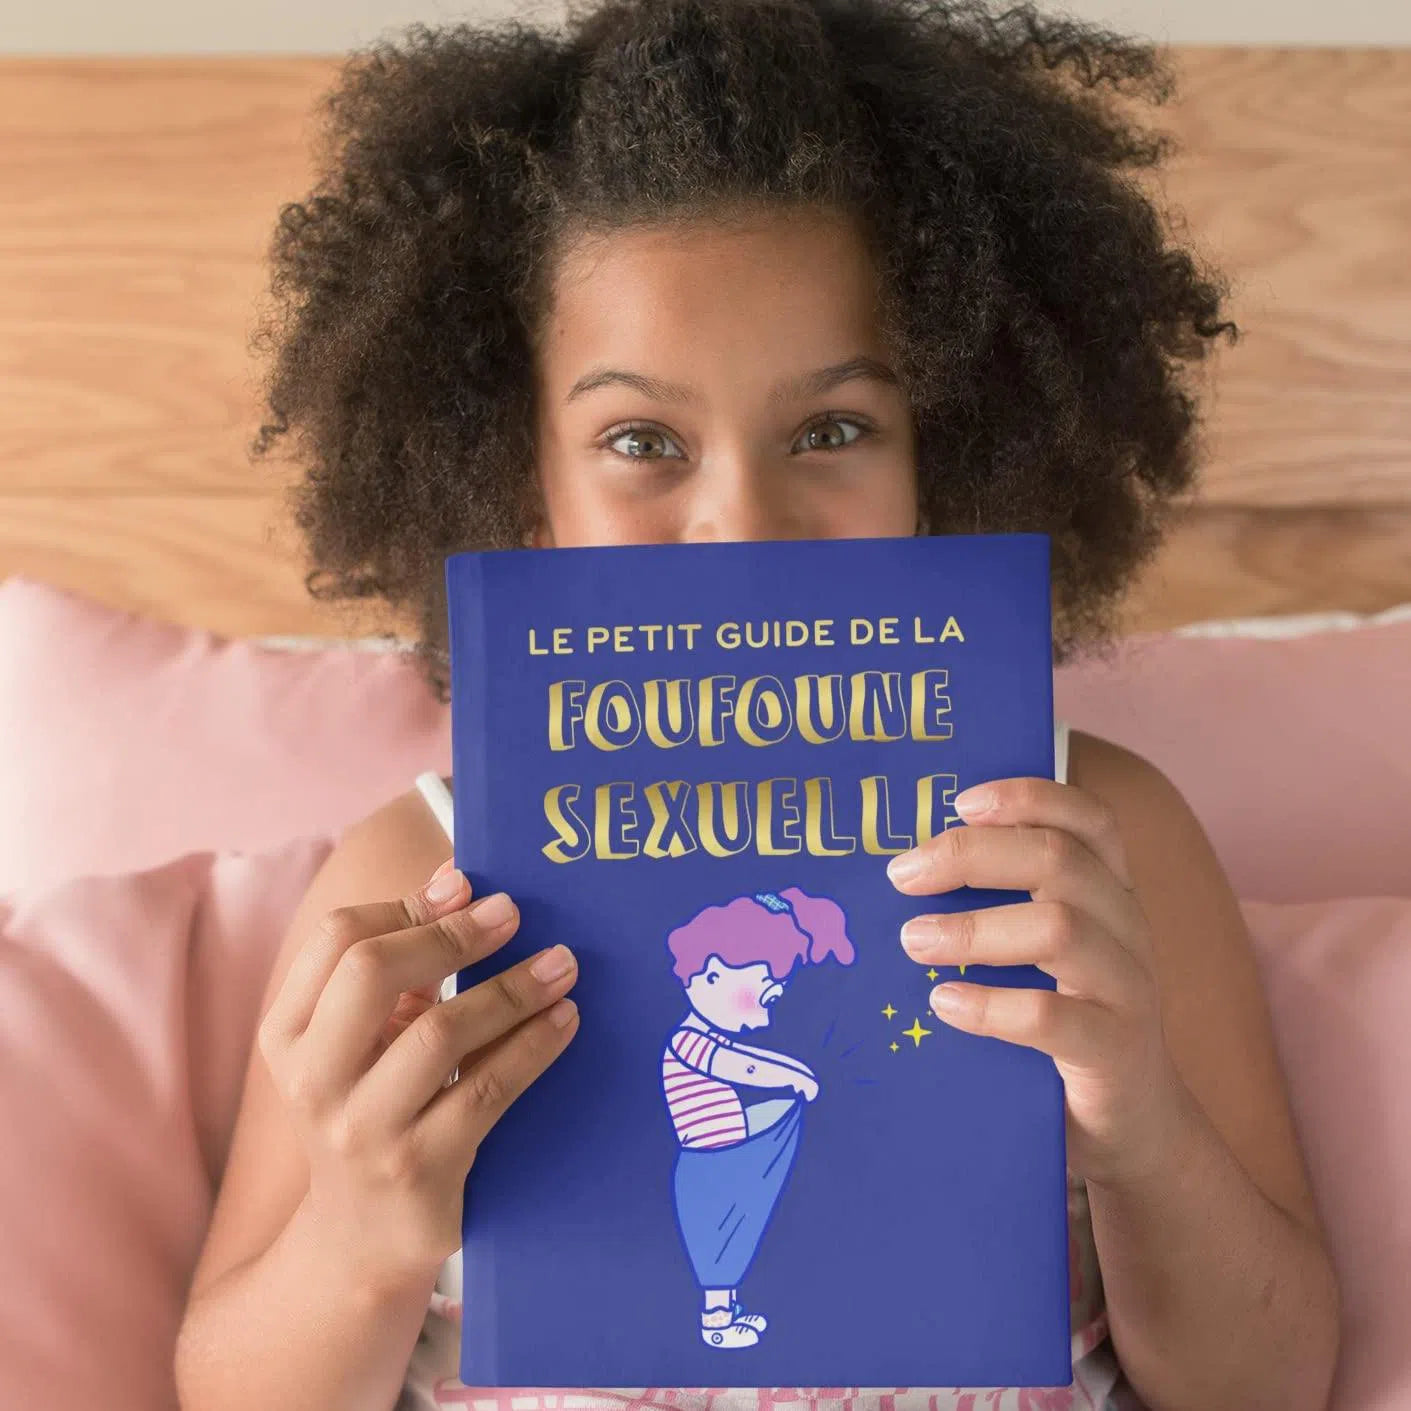 Petite fille sui tient le petit guide de la foufoune sexuelle tome 1 de Julia Pietri qui est unlivre d'éducation sexuelle pour les enfants